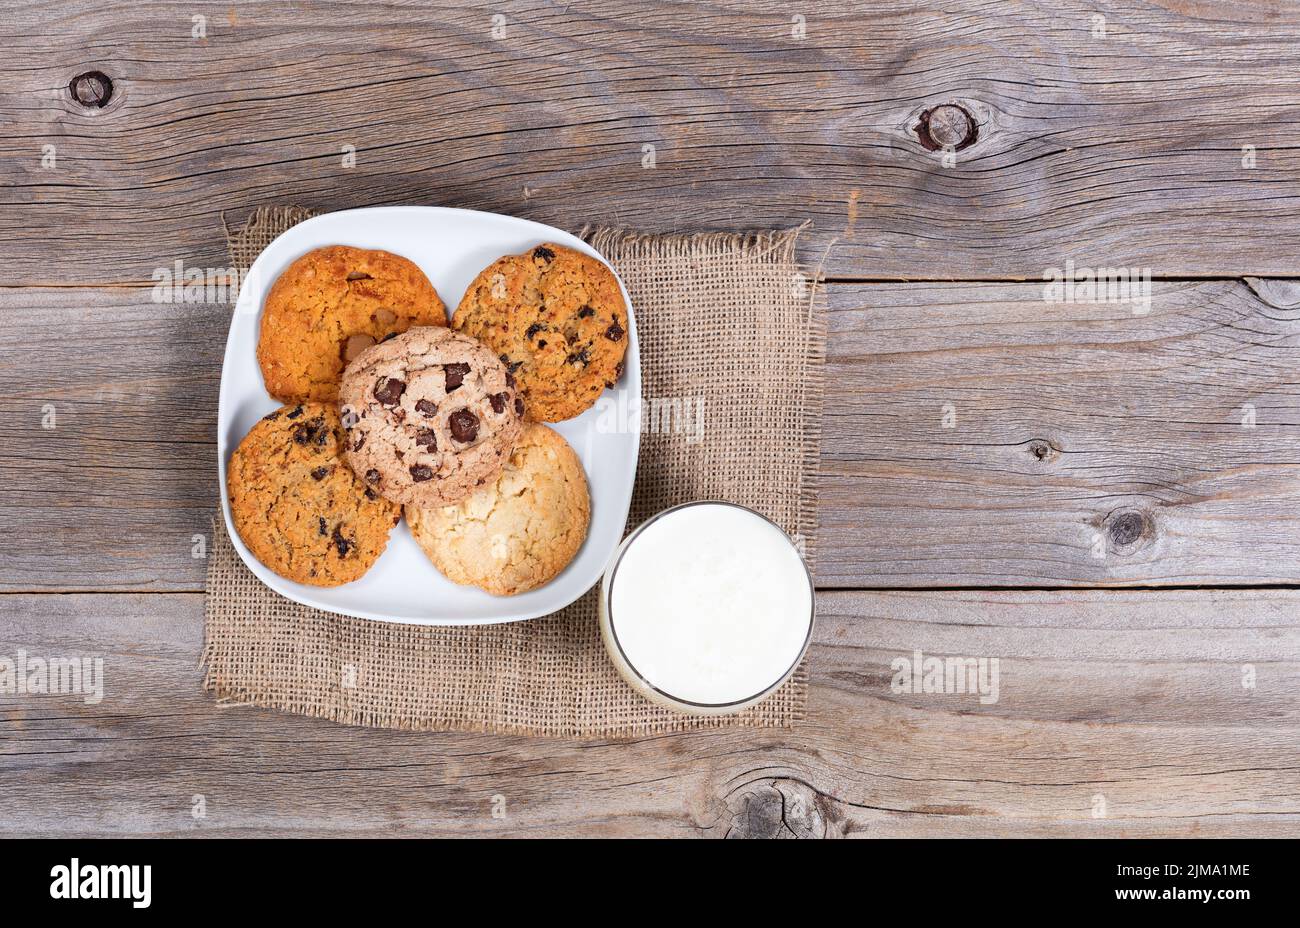 Variedad de galletas horneadas en servilleta y vaso de leche sobre rústicas tablas de madera Foto de stock